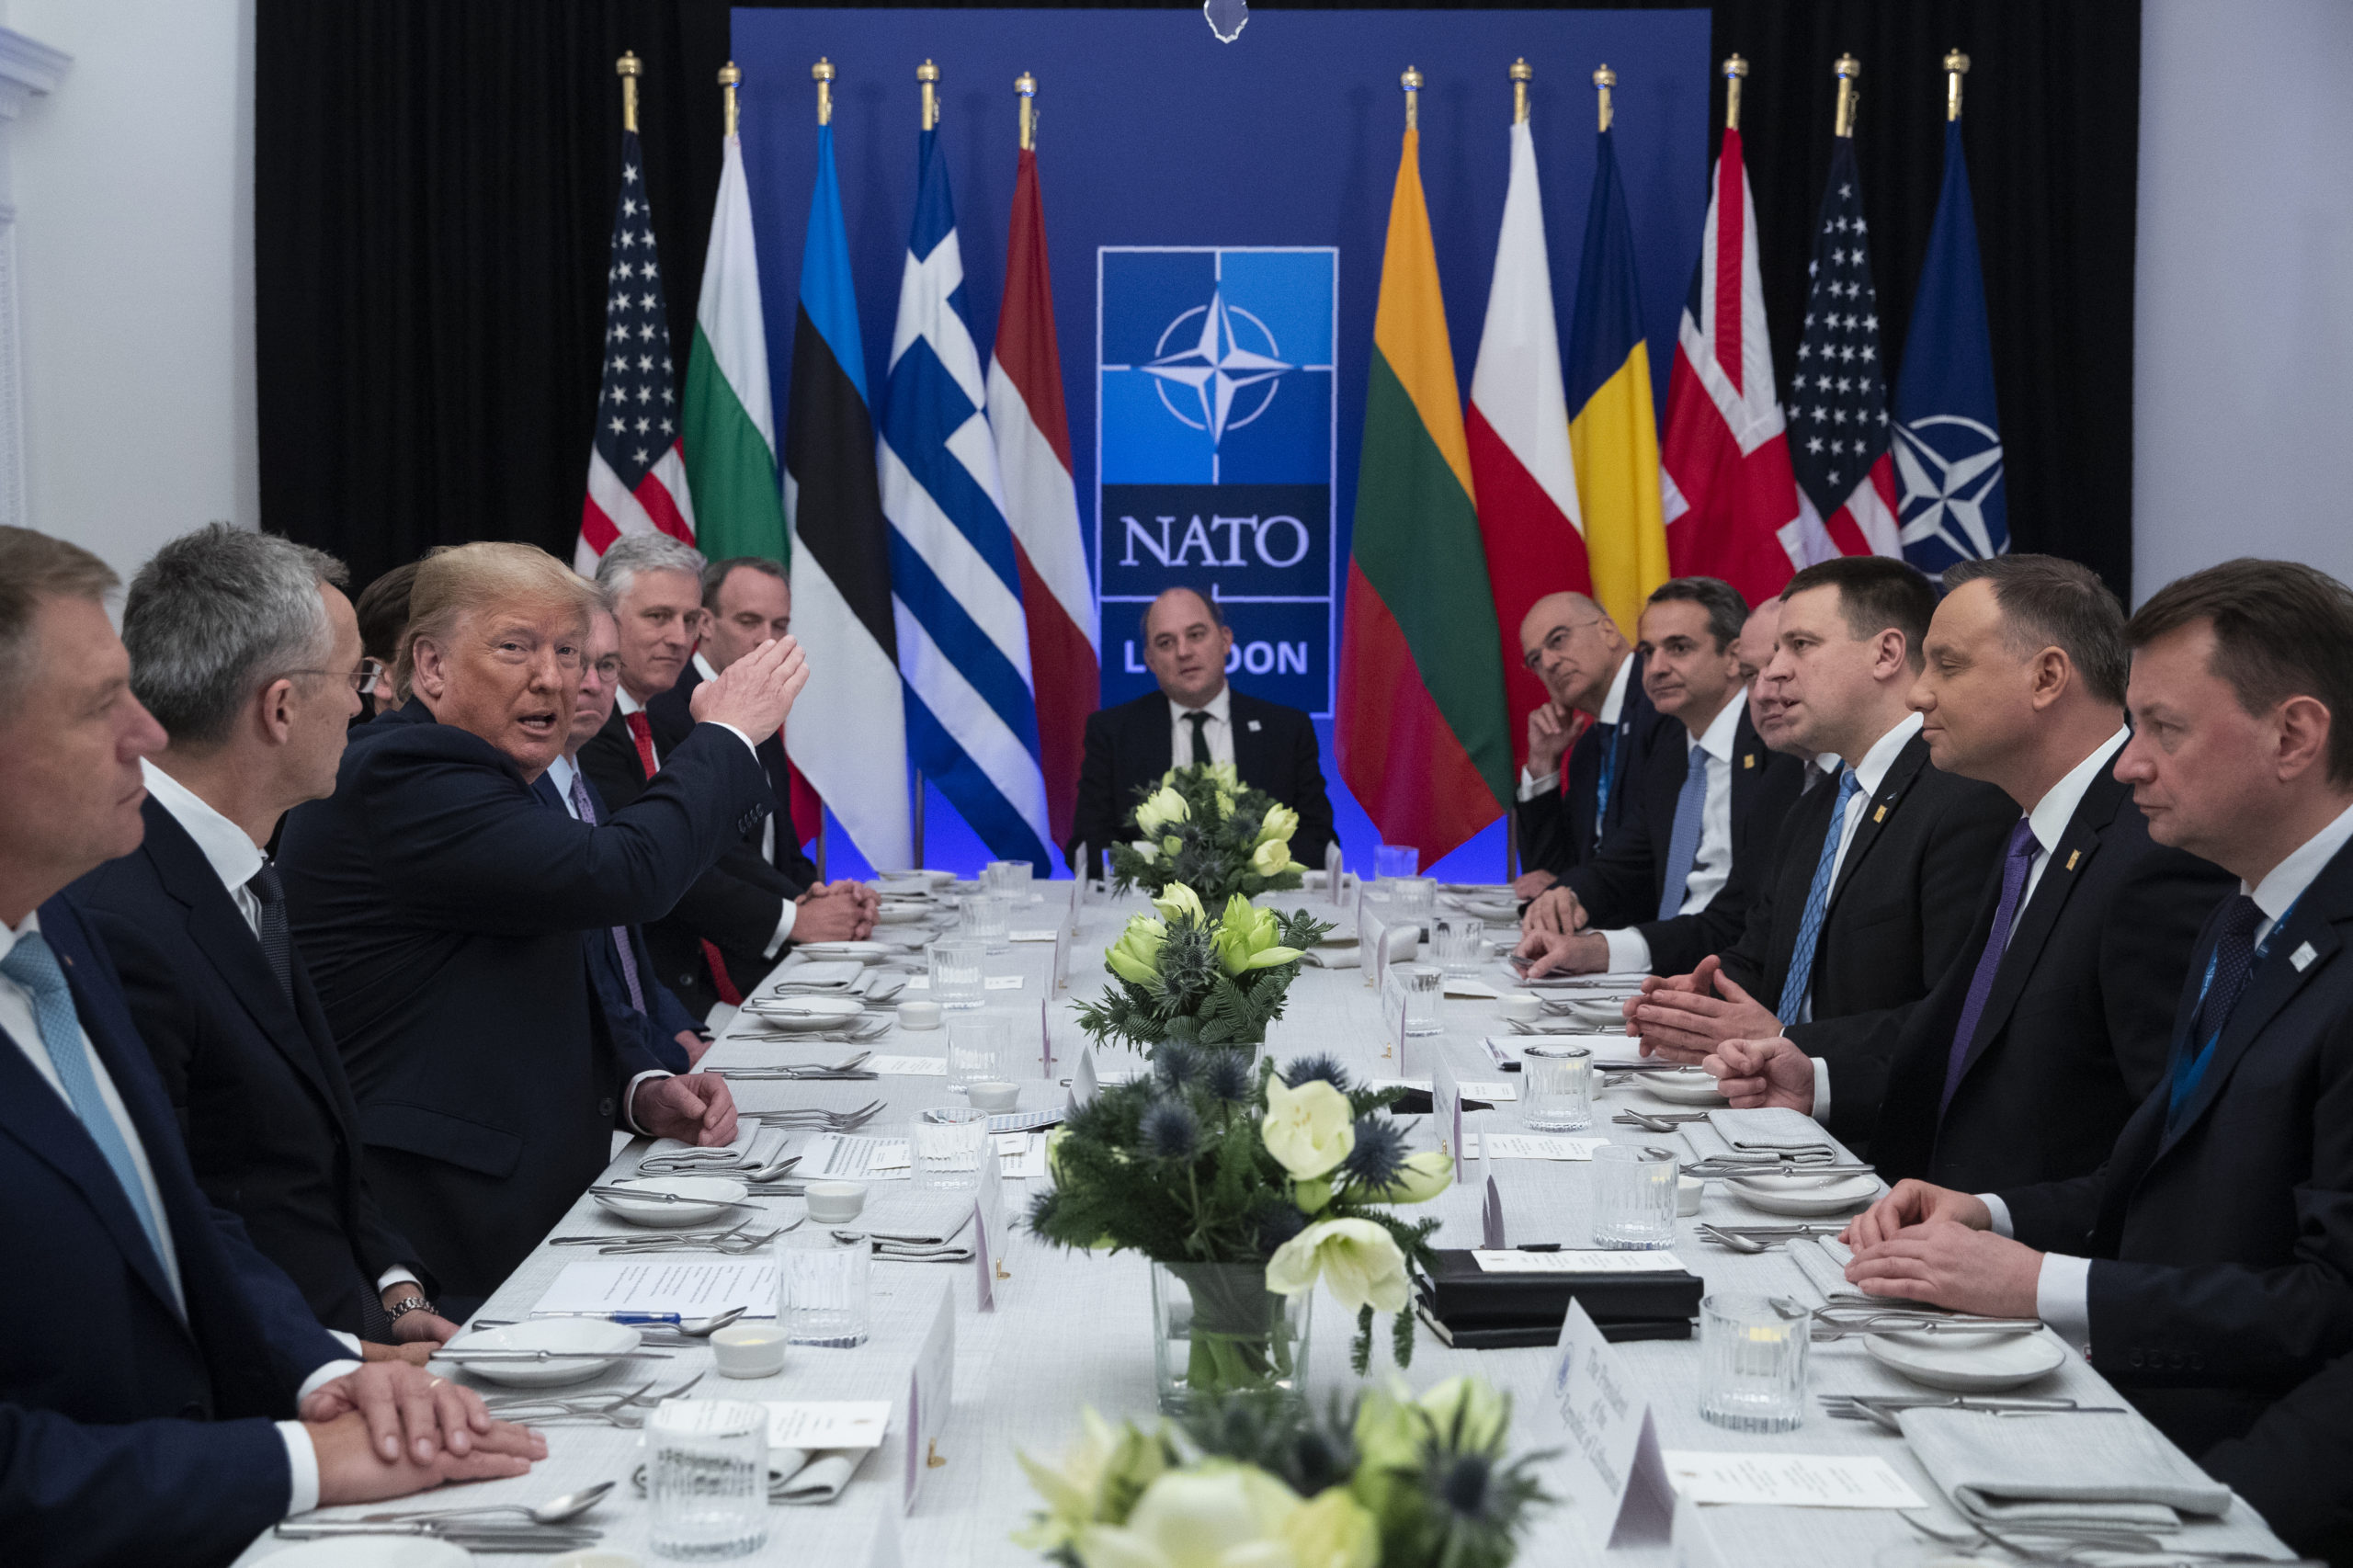 Последняя страна в нато. Североатлантический Альянс НАТО. NATO (North Atlantic Treaty Organization) - Североатлантический военный Альянс (НАТО).. Саммит НАТО 1999. Саммит Альянса НАТО.